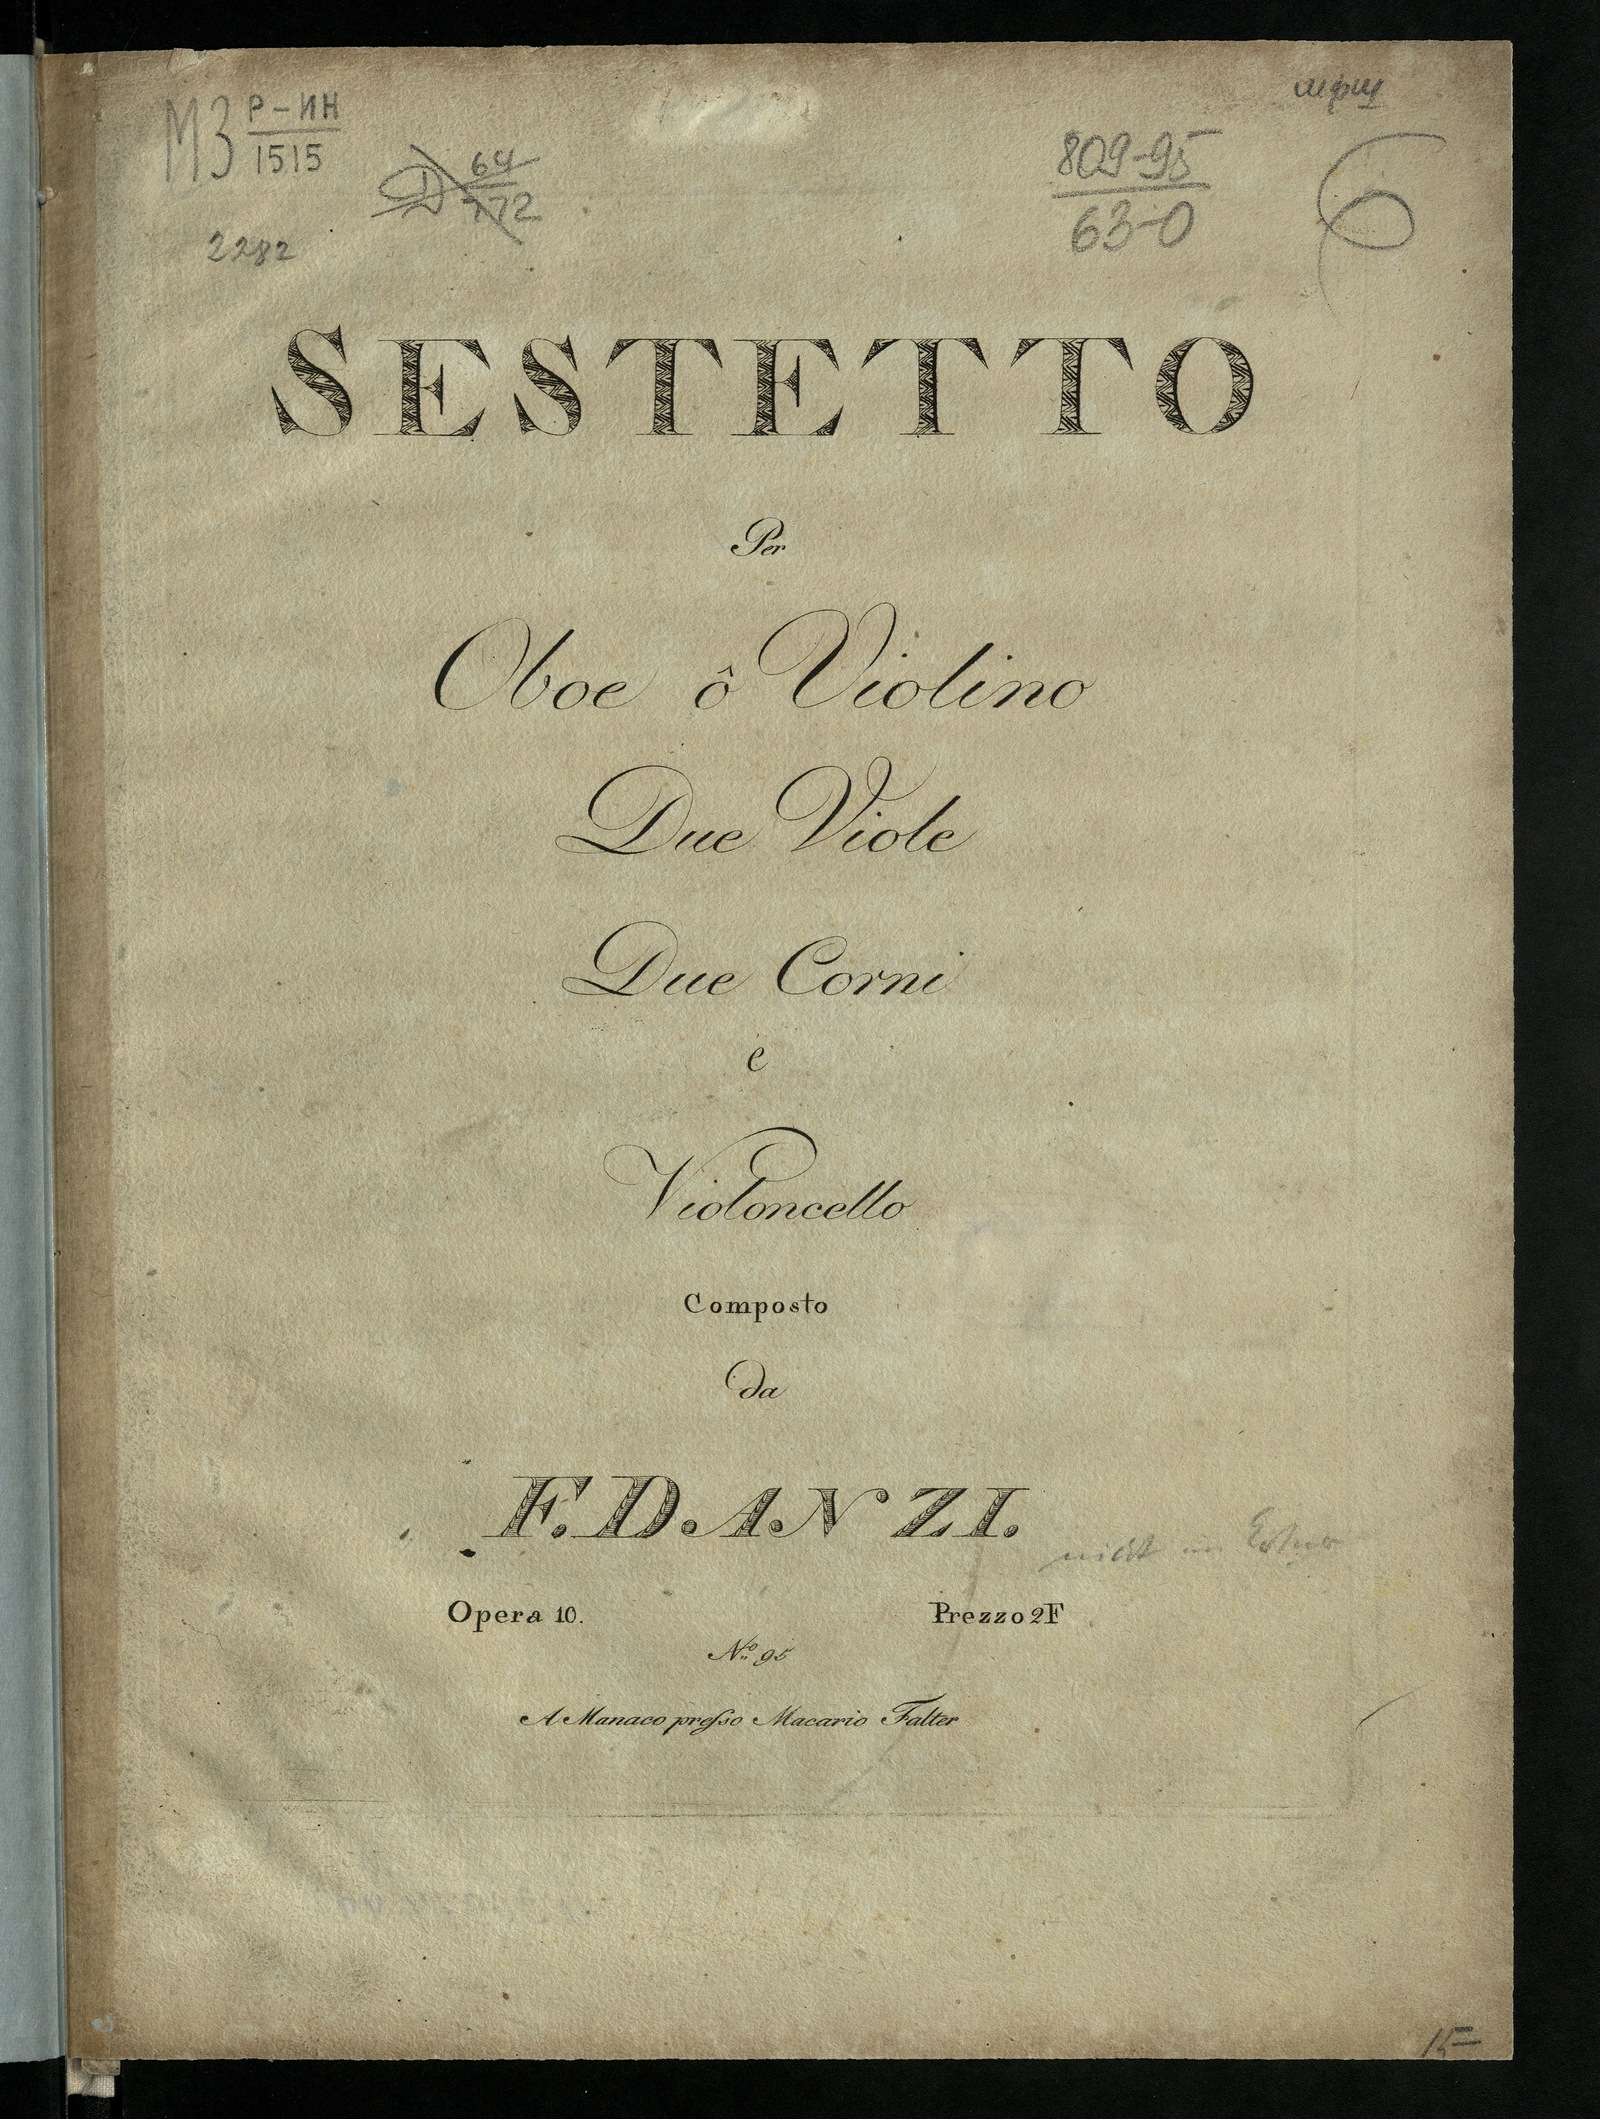 Изображение книги Sestetto: per oboe ô violino, due viole, due corni e violoncello: op. 10